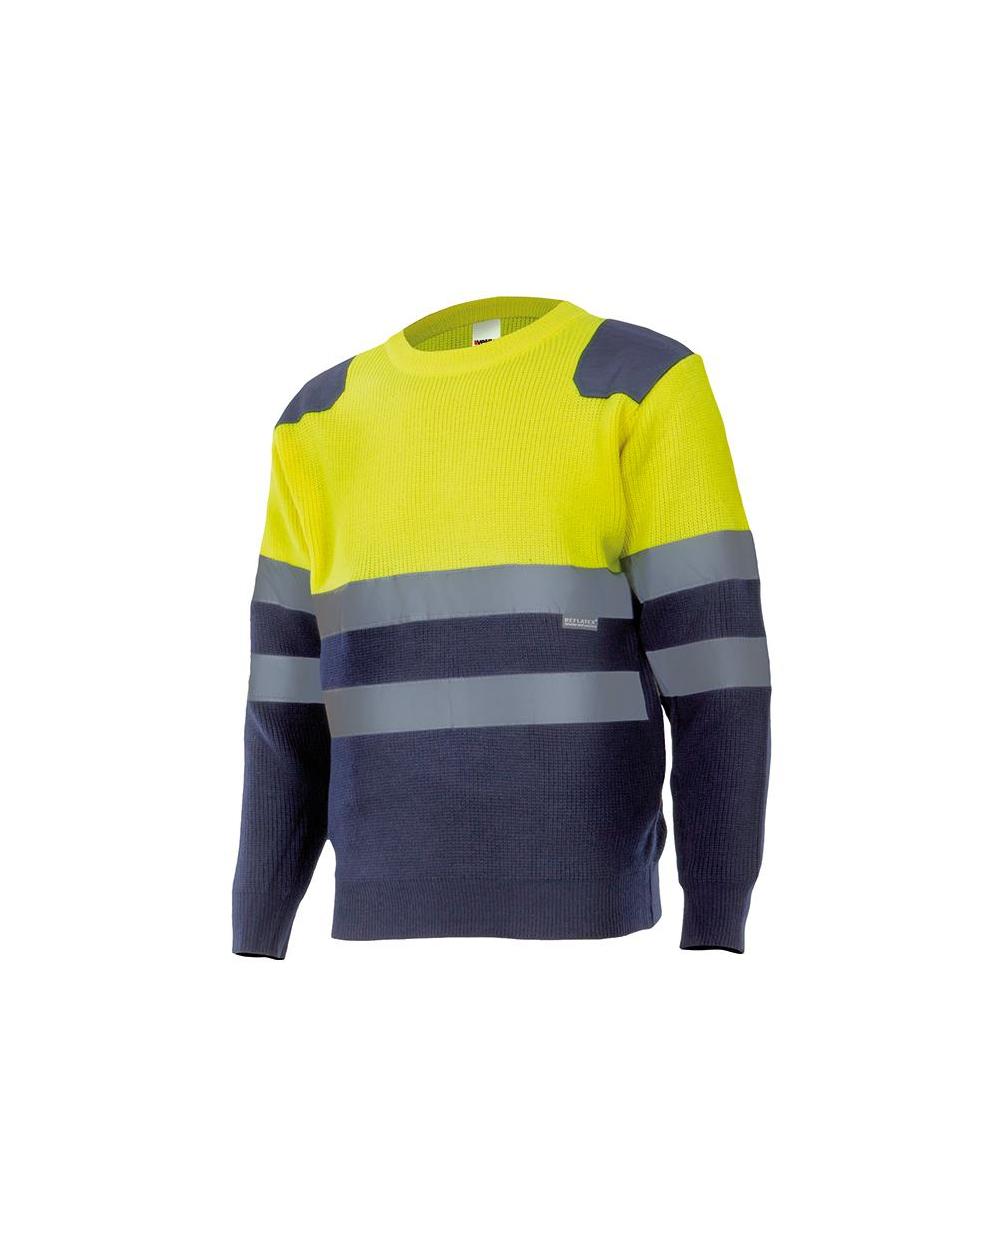 Comprar Jersey bicolor alta visibilidad serie 179 online barato Sup Ama/Inf Marino